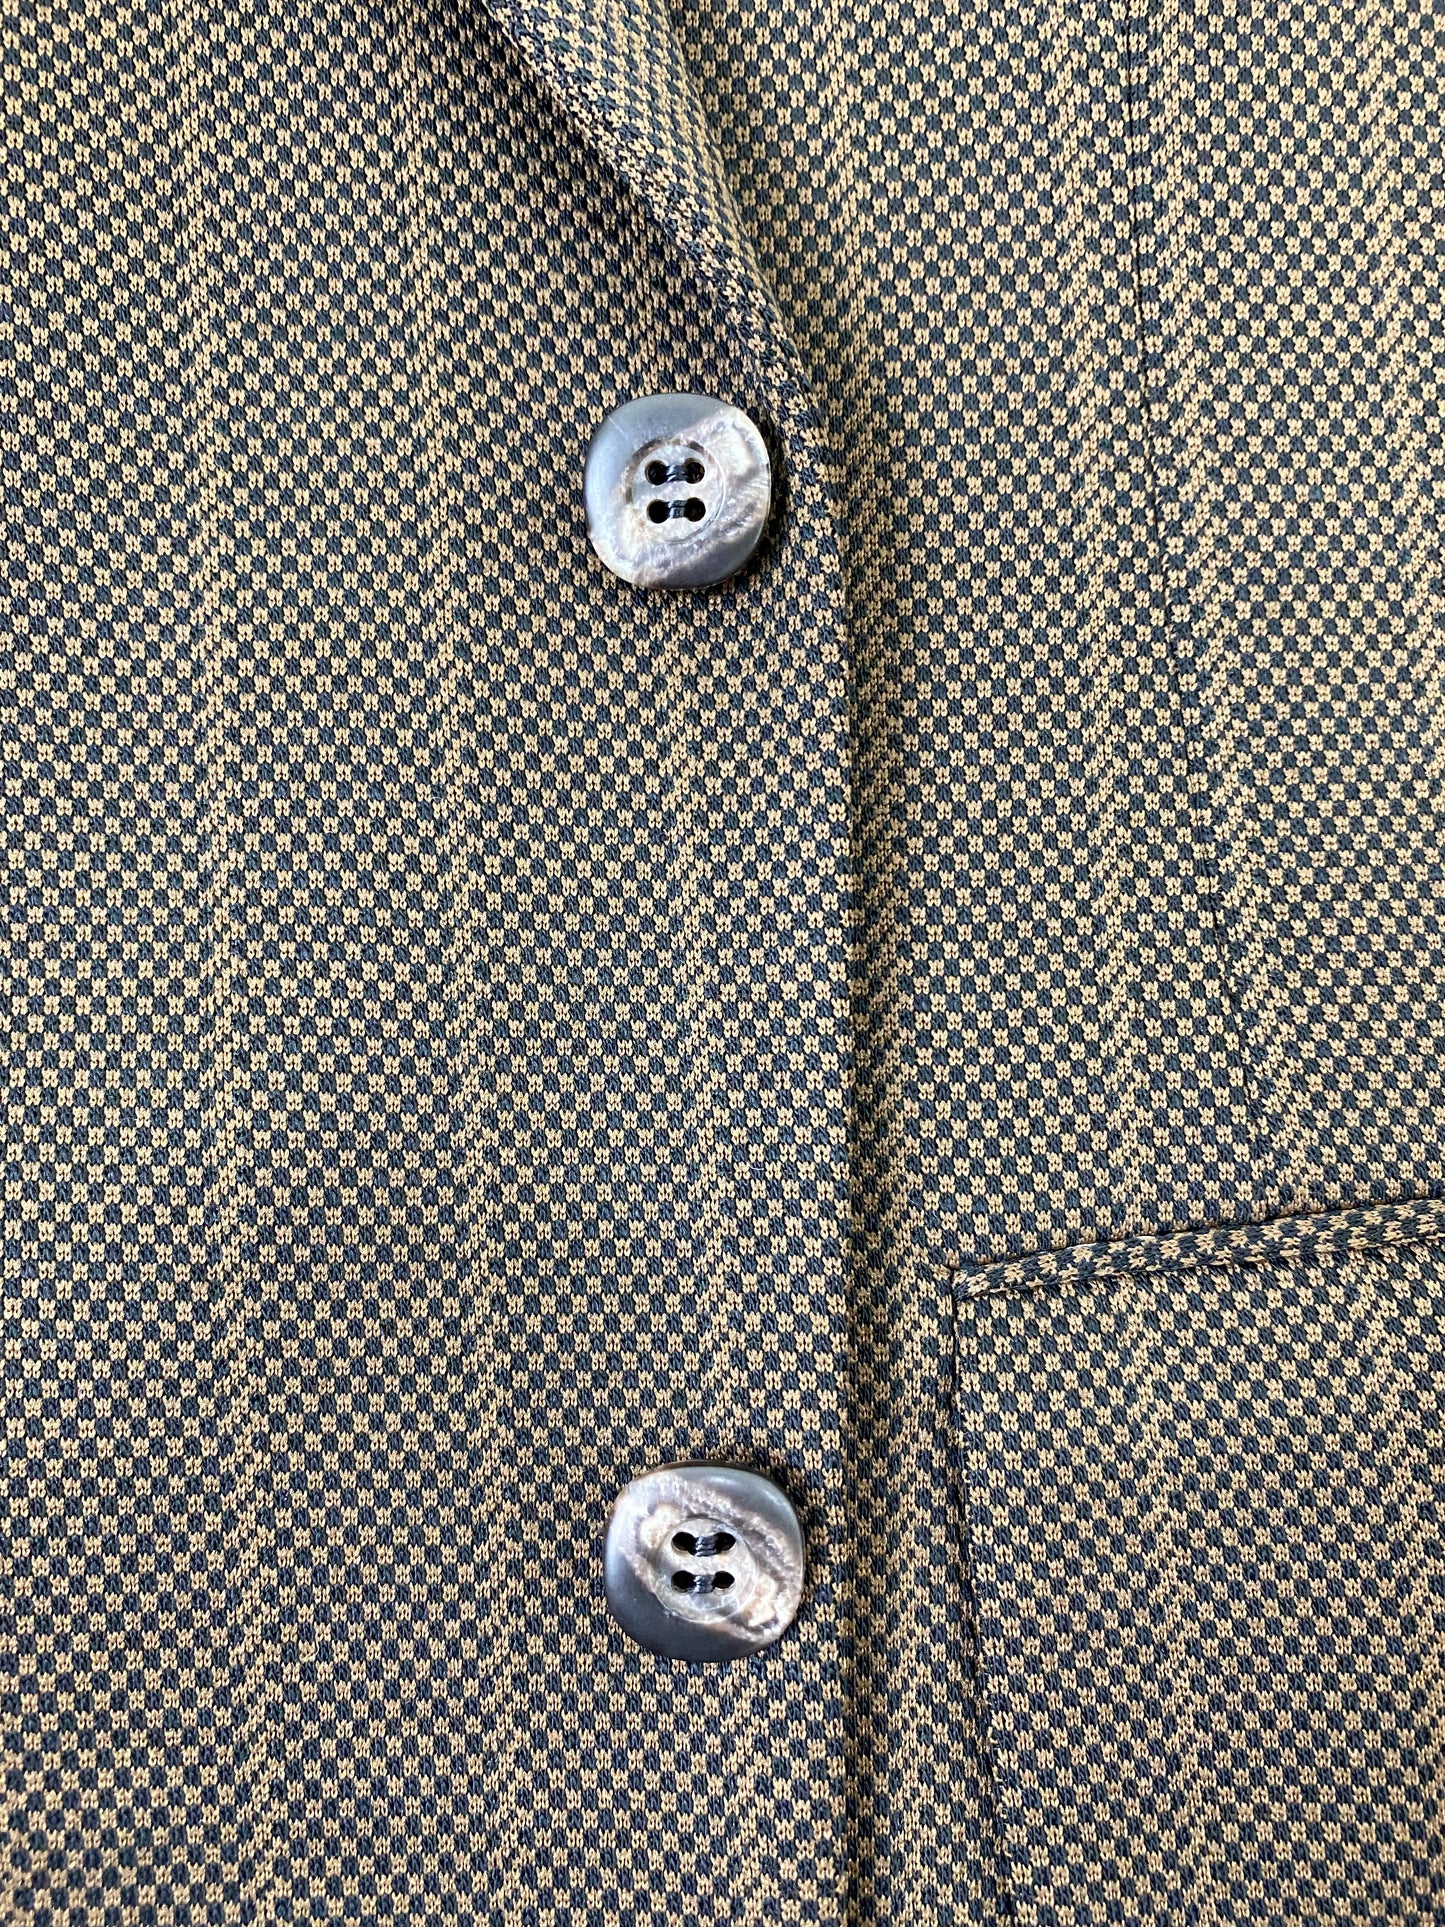 Early 1970s Vintage Deadstock Men's Suit, Brown Shepherd's Check & Stripe 2-Piece Poly Suit, Prestige Clothes, NOS